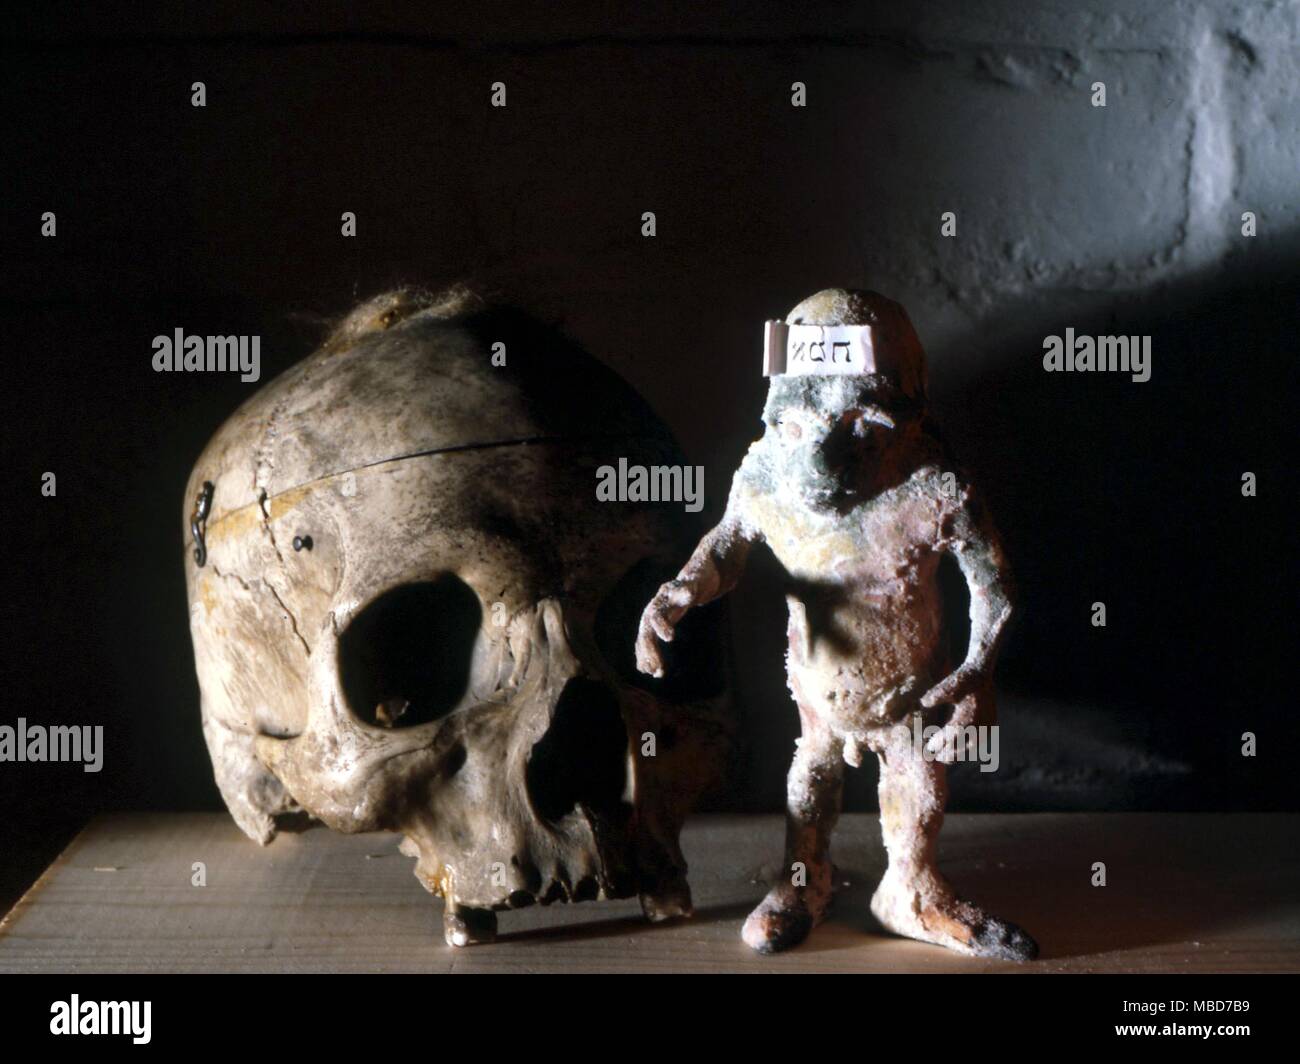 Il cranio con il fabbricato chiamato mostro Golem, una sorta di prototipo del Frankenstein creatura. Foto Stock